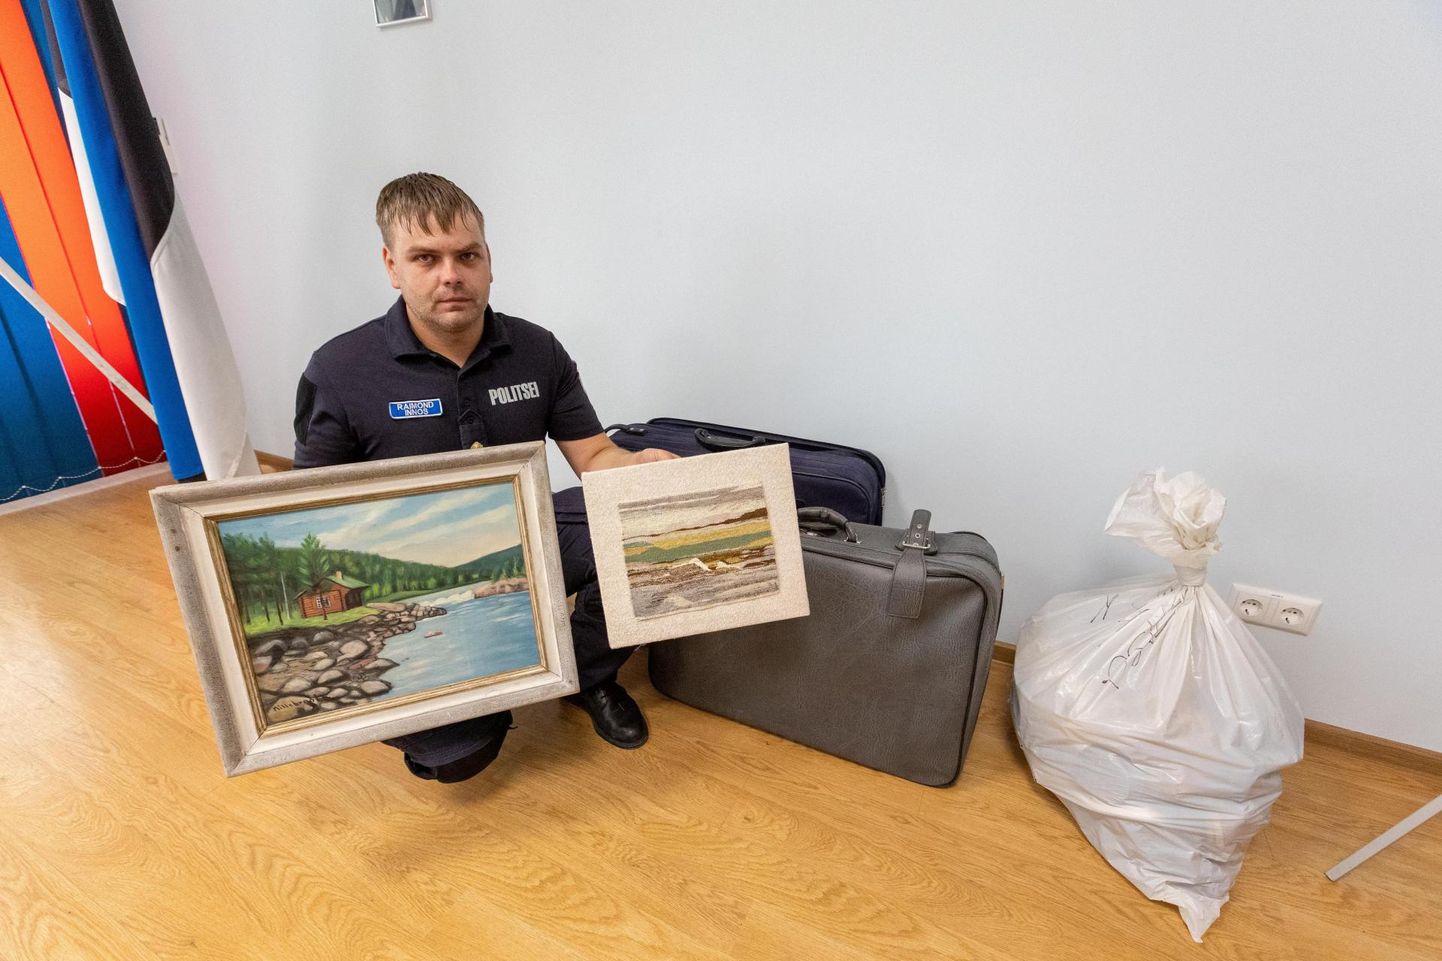 Paide politseijaoskonna korrakaitseametnik Raimond Innos näitab Pärnu–Rakvere maanteelt leitud suurte reisikohvrite ja kilekoti sisu. Peale jalanõude avastasid politseinikud neist ka mitu maali.